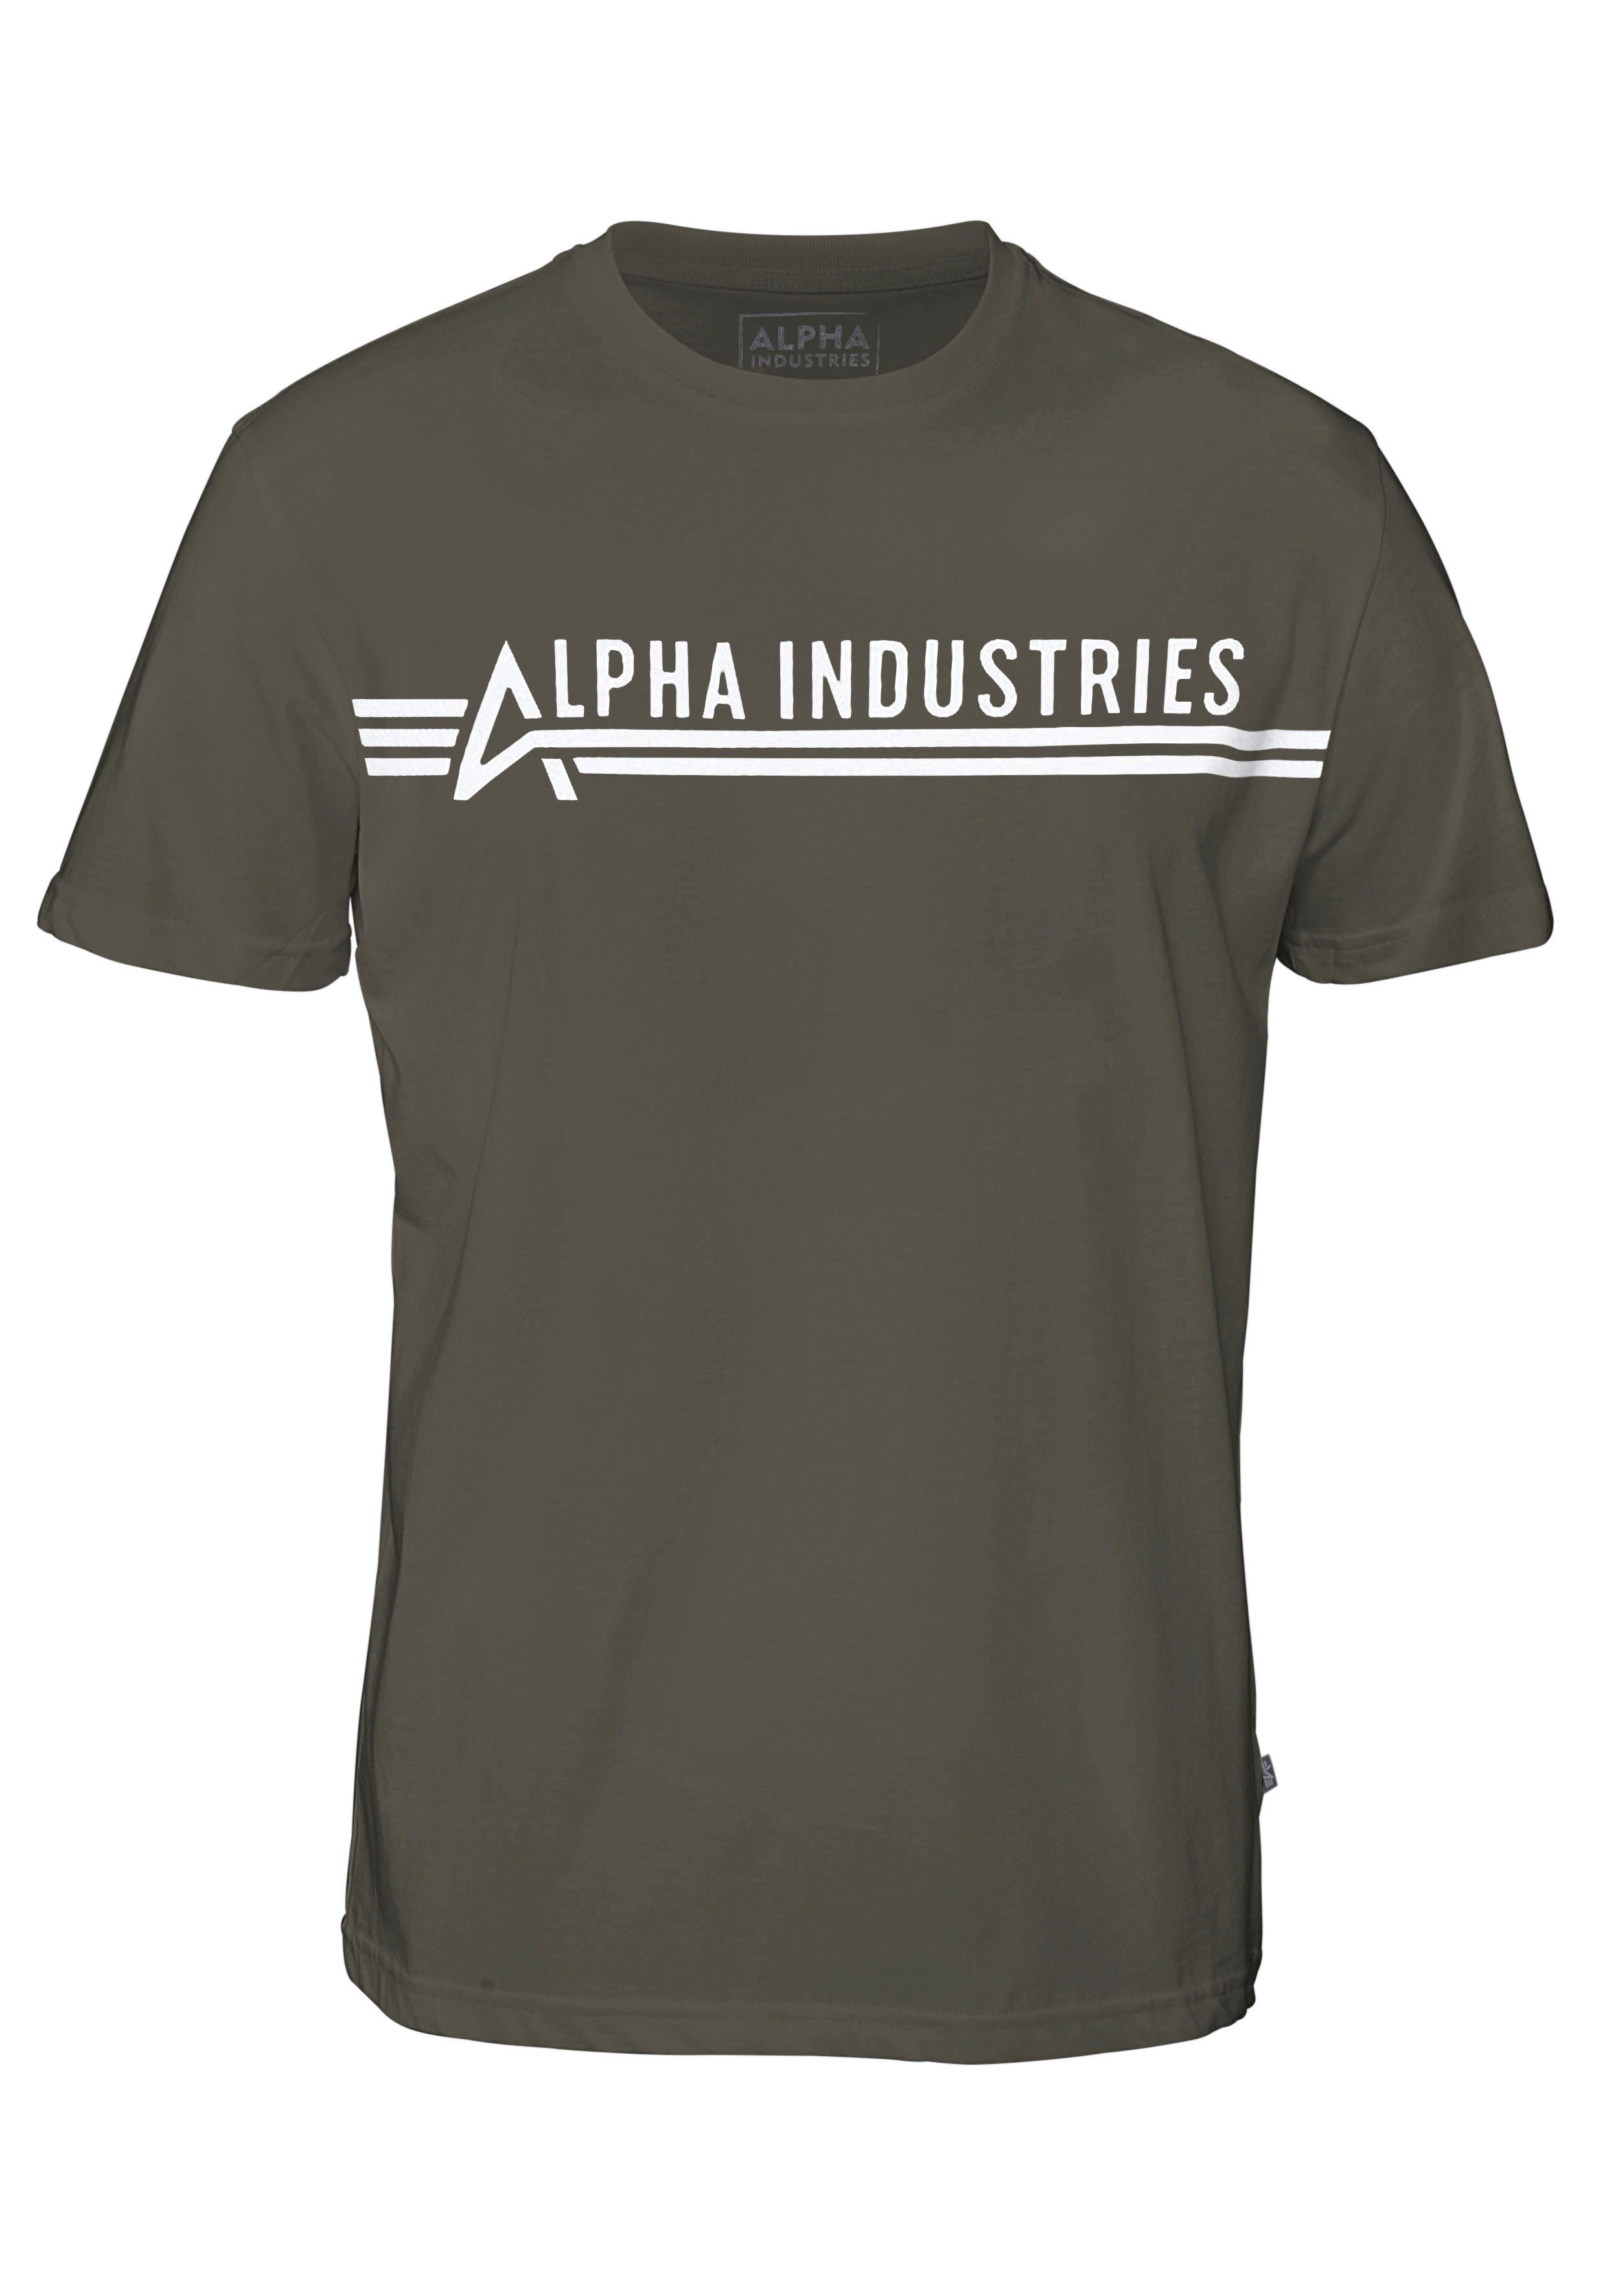 ALPHA Alpha INDUSTRIES Industries olivgrün Rundhalsshirt T